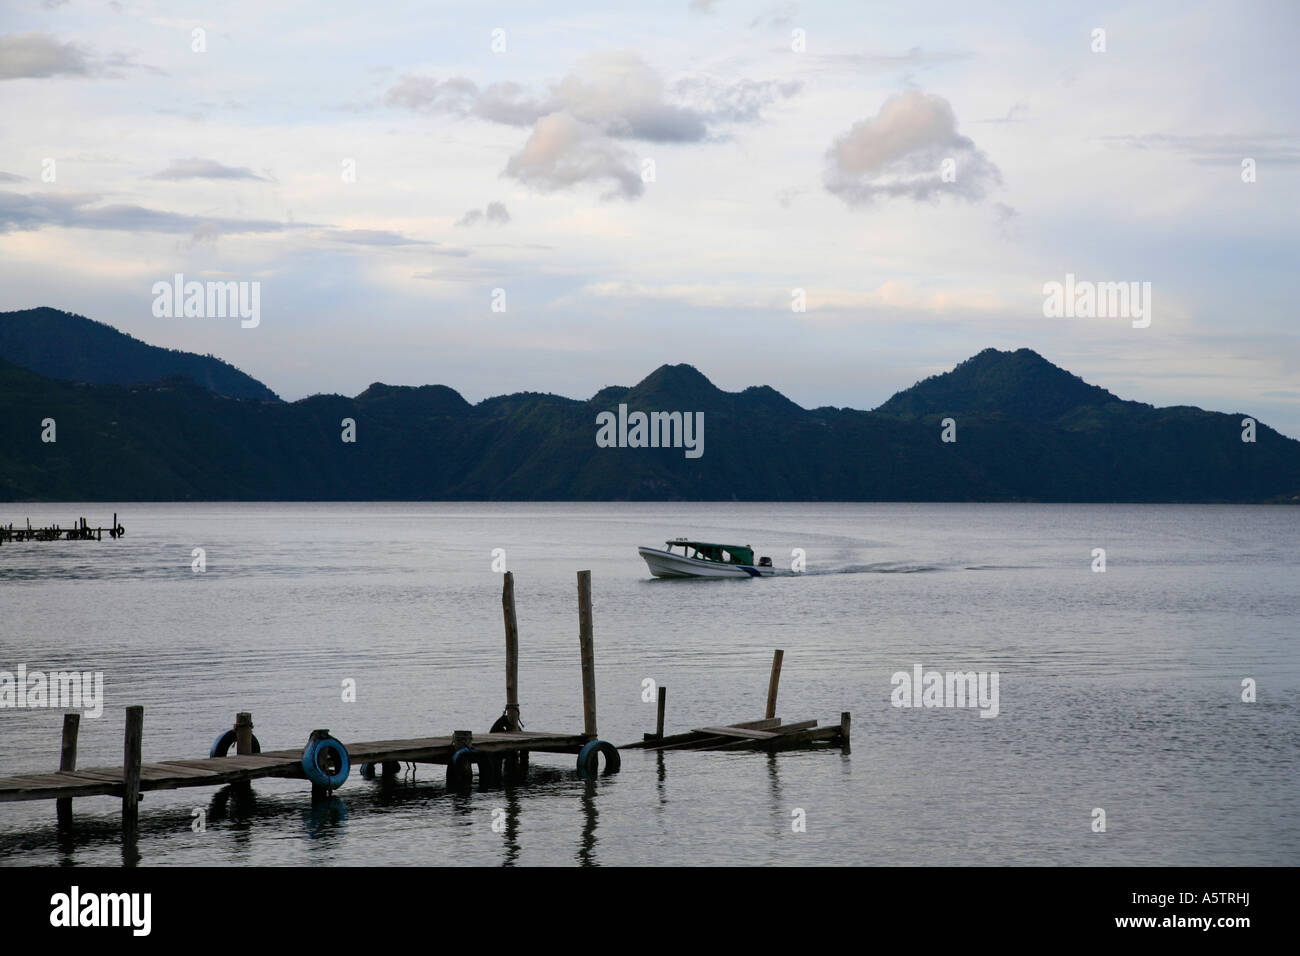 Les juges Painet1580 scènes lac Atitlan guatemala amérique latine amérique centrale bateau transports pays de l'eau paysage Banque D'Images